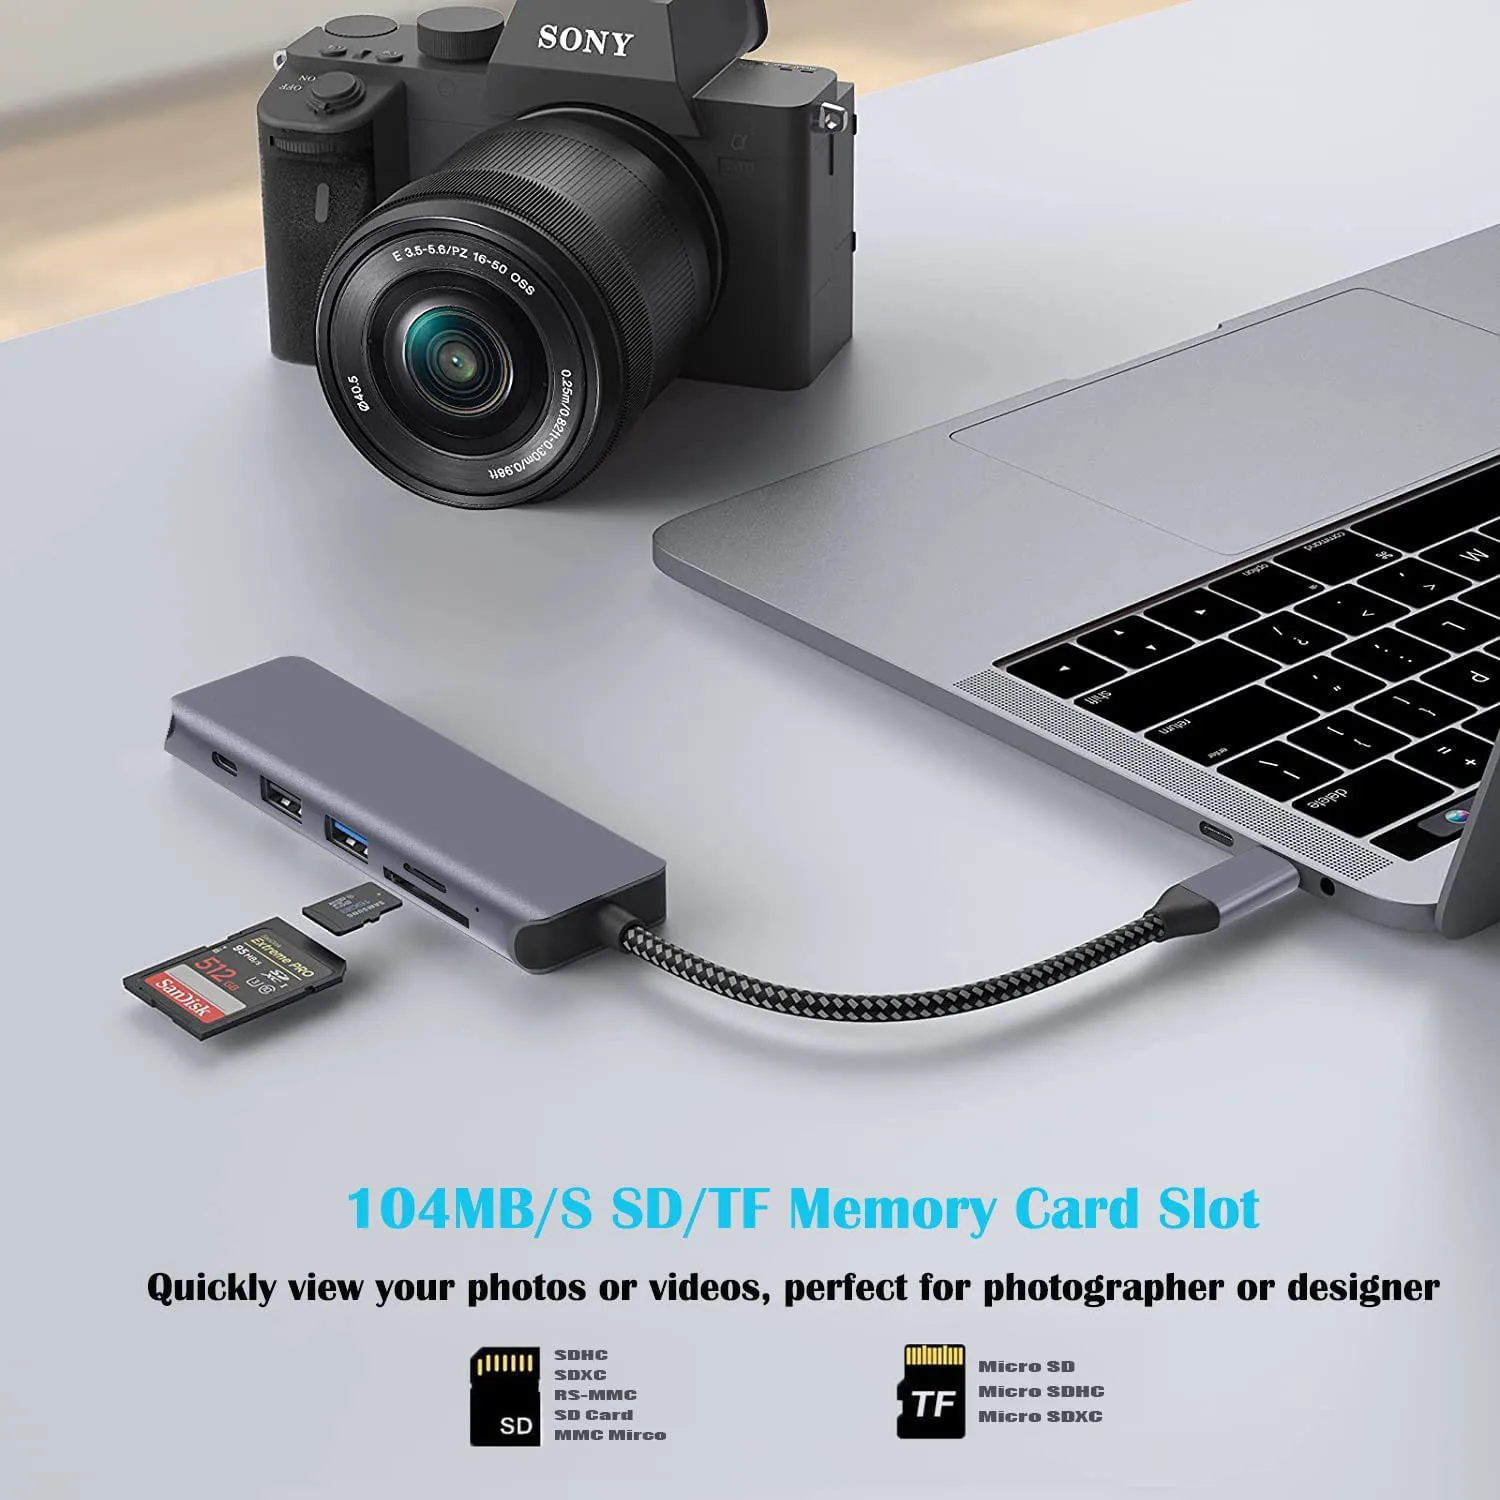 Newmight Adaptateur Multiport hub USB C, Adaptateur 5 en 1 USB-C à HDMI,  Lecteur SD/TF de Transfert de données Rapide HDMI 4K USB 3.0, Support  d'extension USB C pour Apple Macbook 